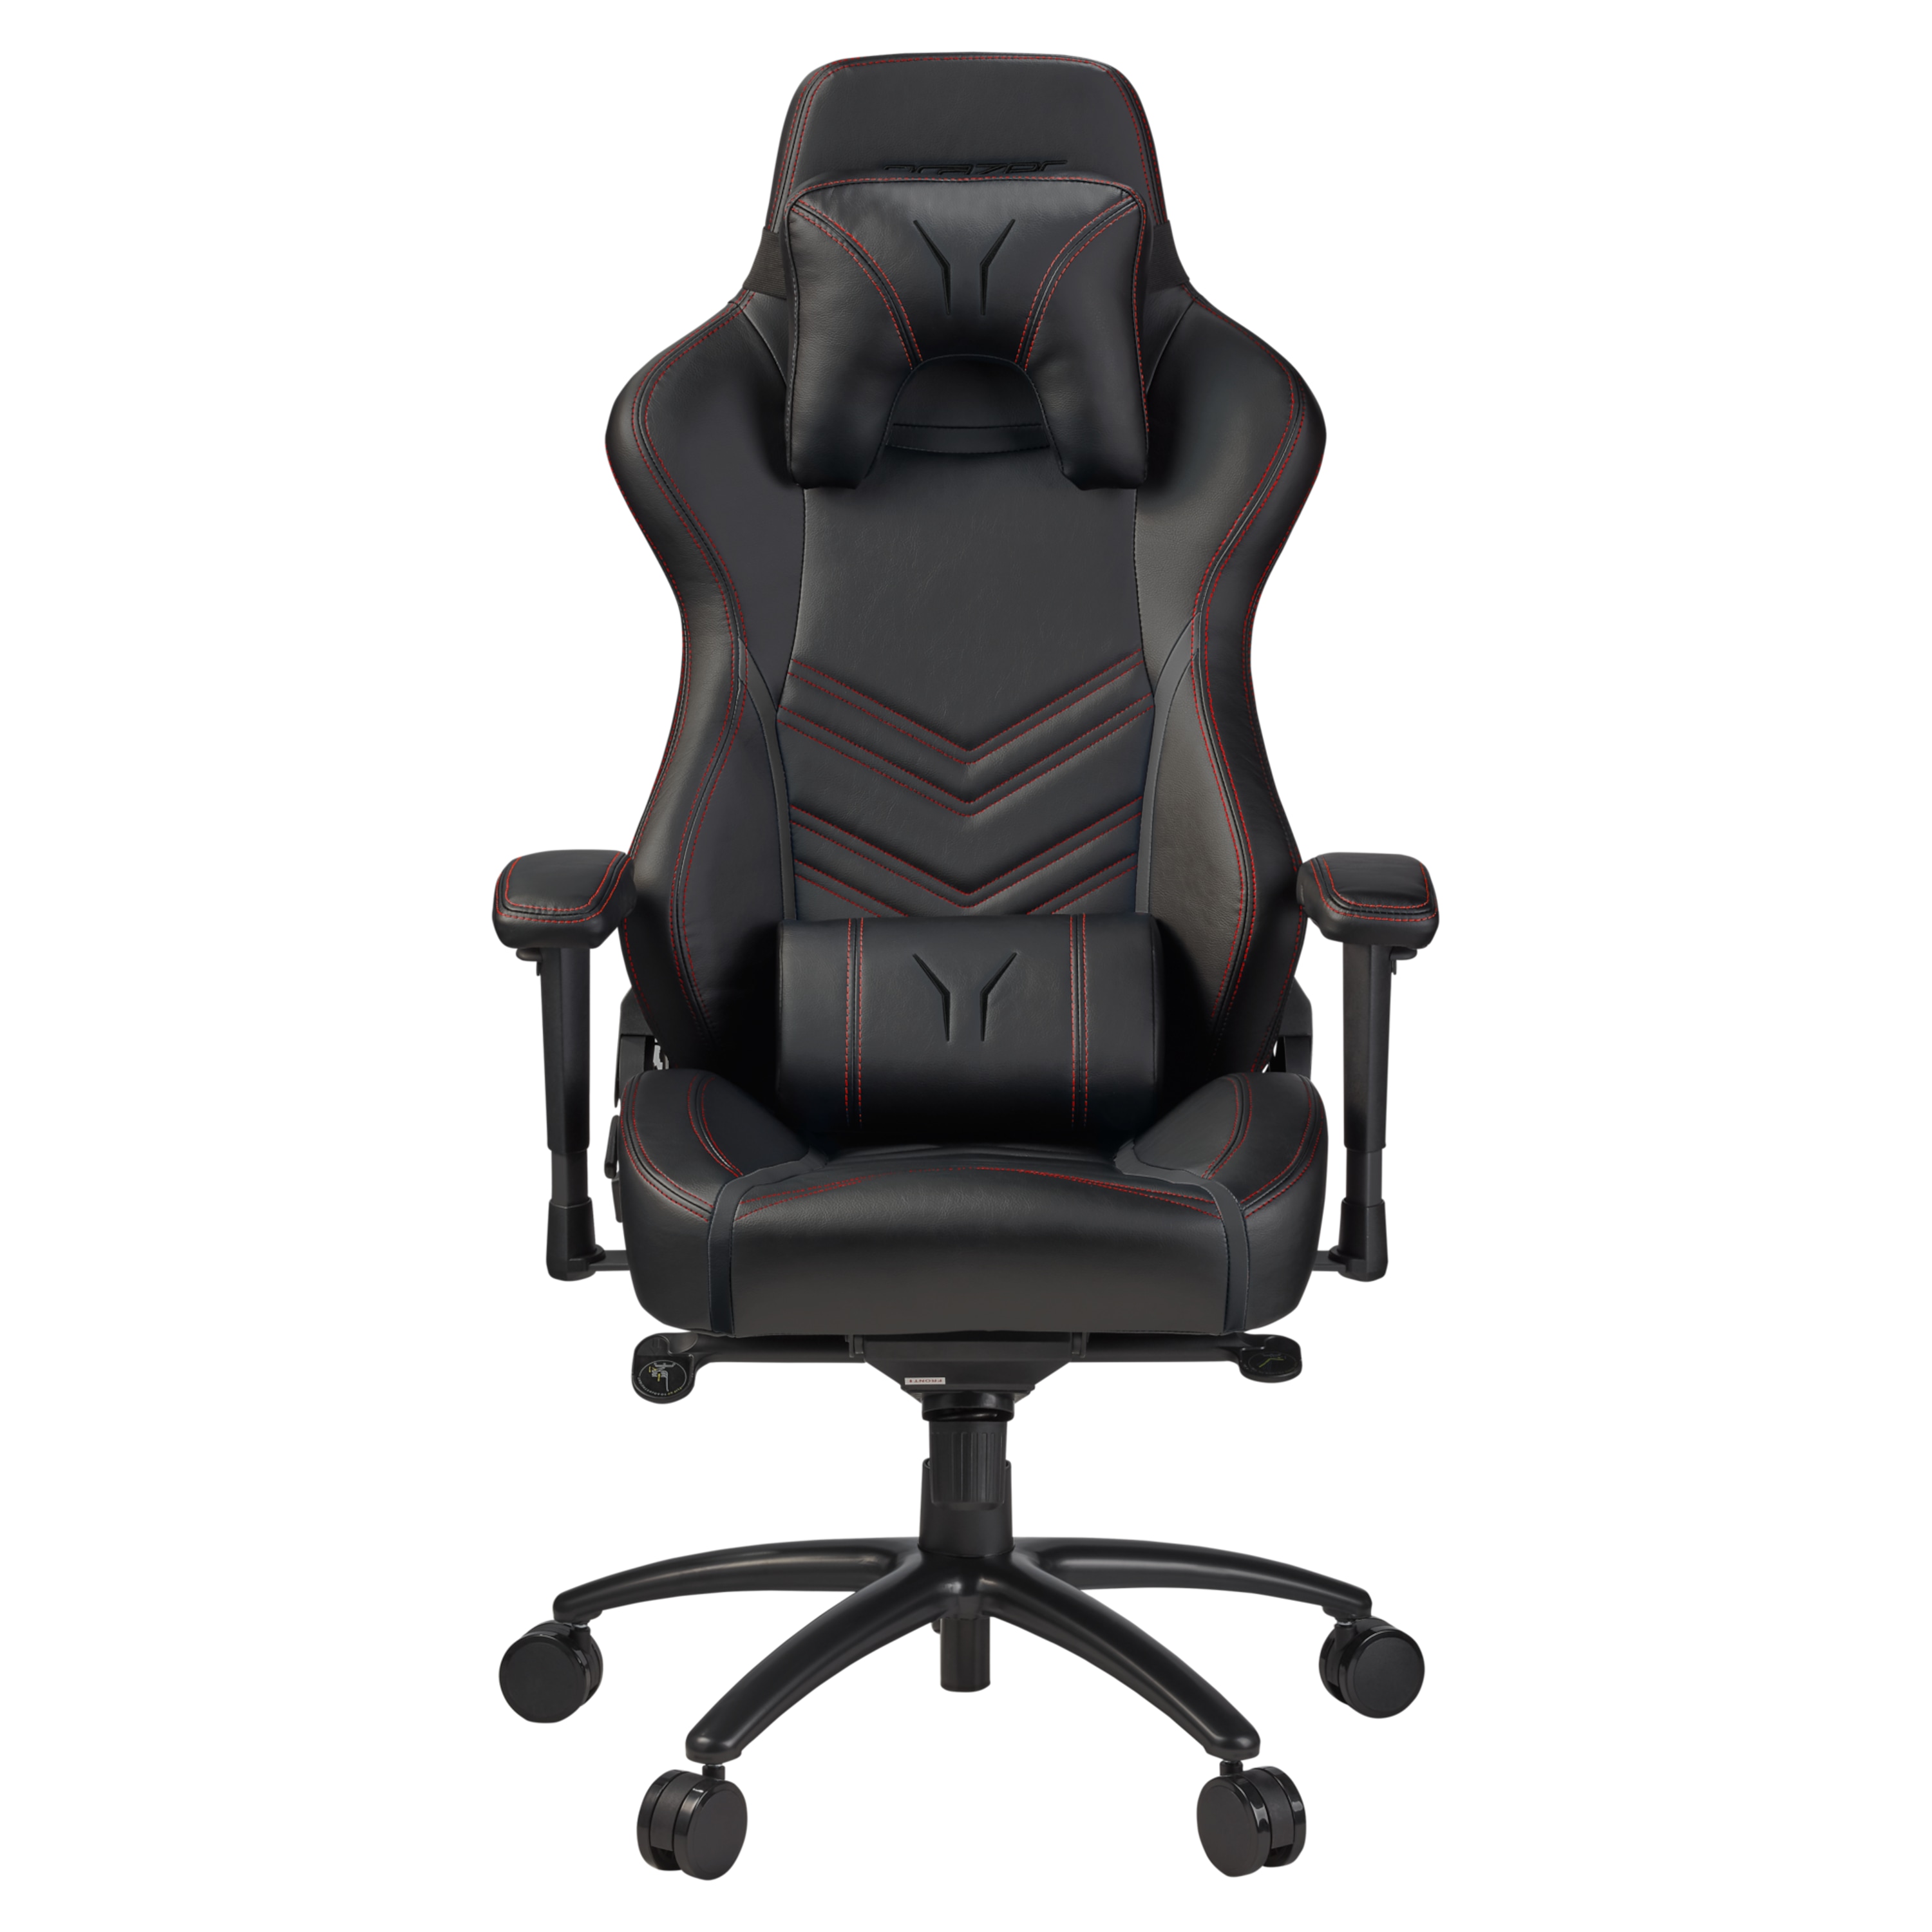 ERAZER günstig Kaufen-MEDION ERAZER® X89410 Gaming Stuhl, stilvoll und komfortabel, sportliche Optik und hochwertige Materialien, mit 2 Kissen für den Rücken- und Kopfbereich. MEDION ERAZER® X89410 Gaming Stuhl, stilvoll und komfortabel, sportliche Optik un